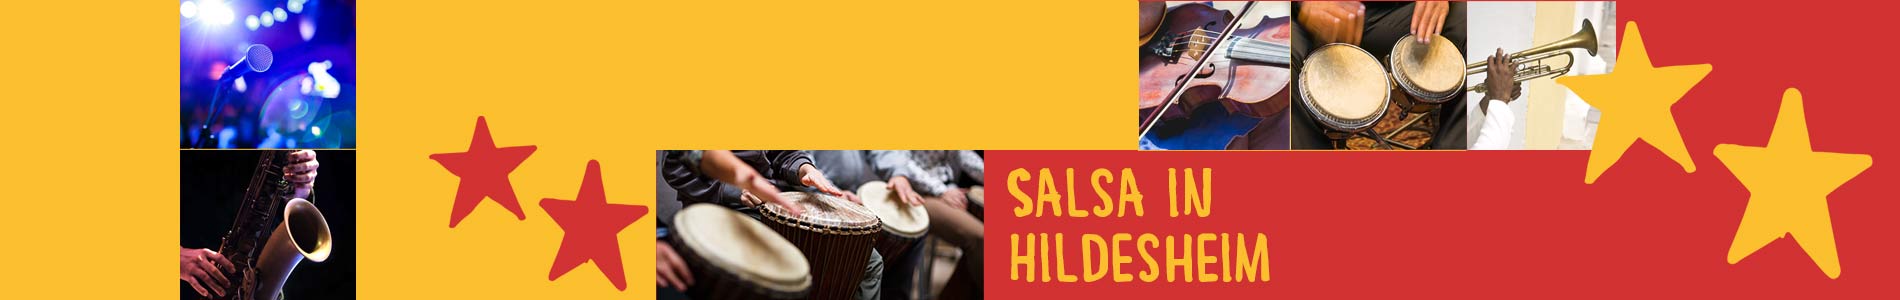 Salsa in Hildesheim – Salsa lernen und tanzen, Tanzkurse, Partys, Veranstaltungen